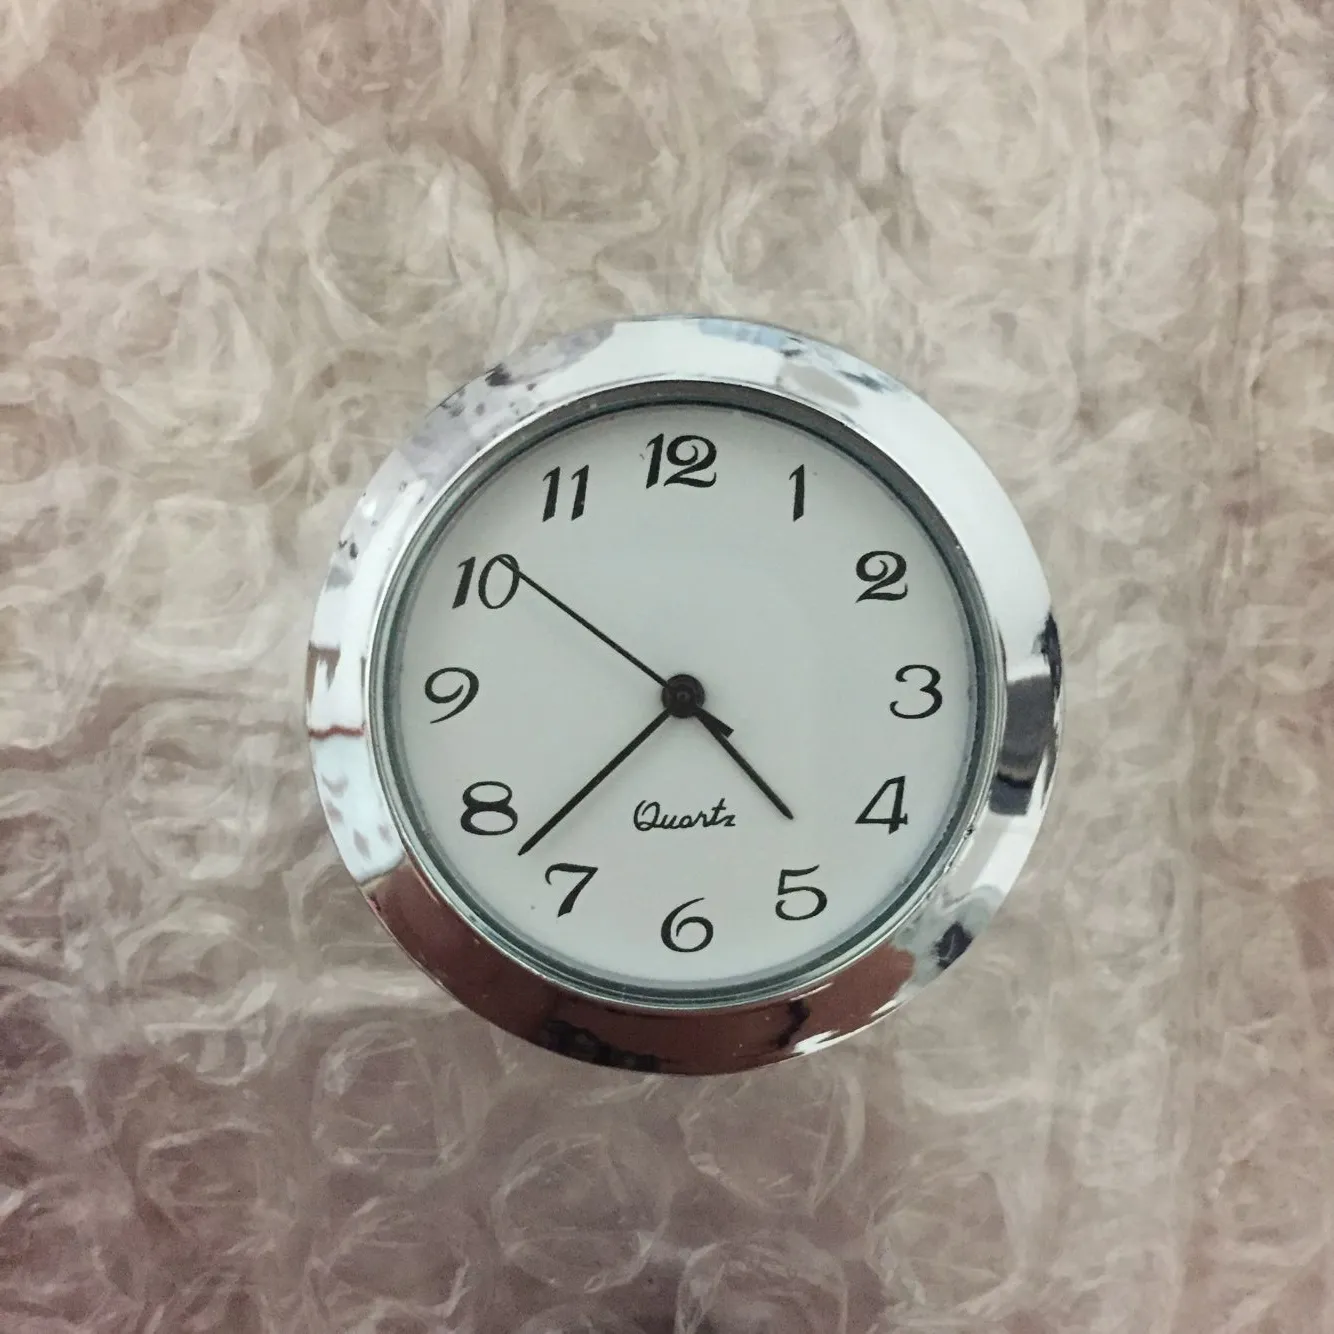 1 7/16 pouces argent lunette insert horloge standand taille arabe cadran ajustement horloges PC21S mouvement